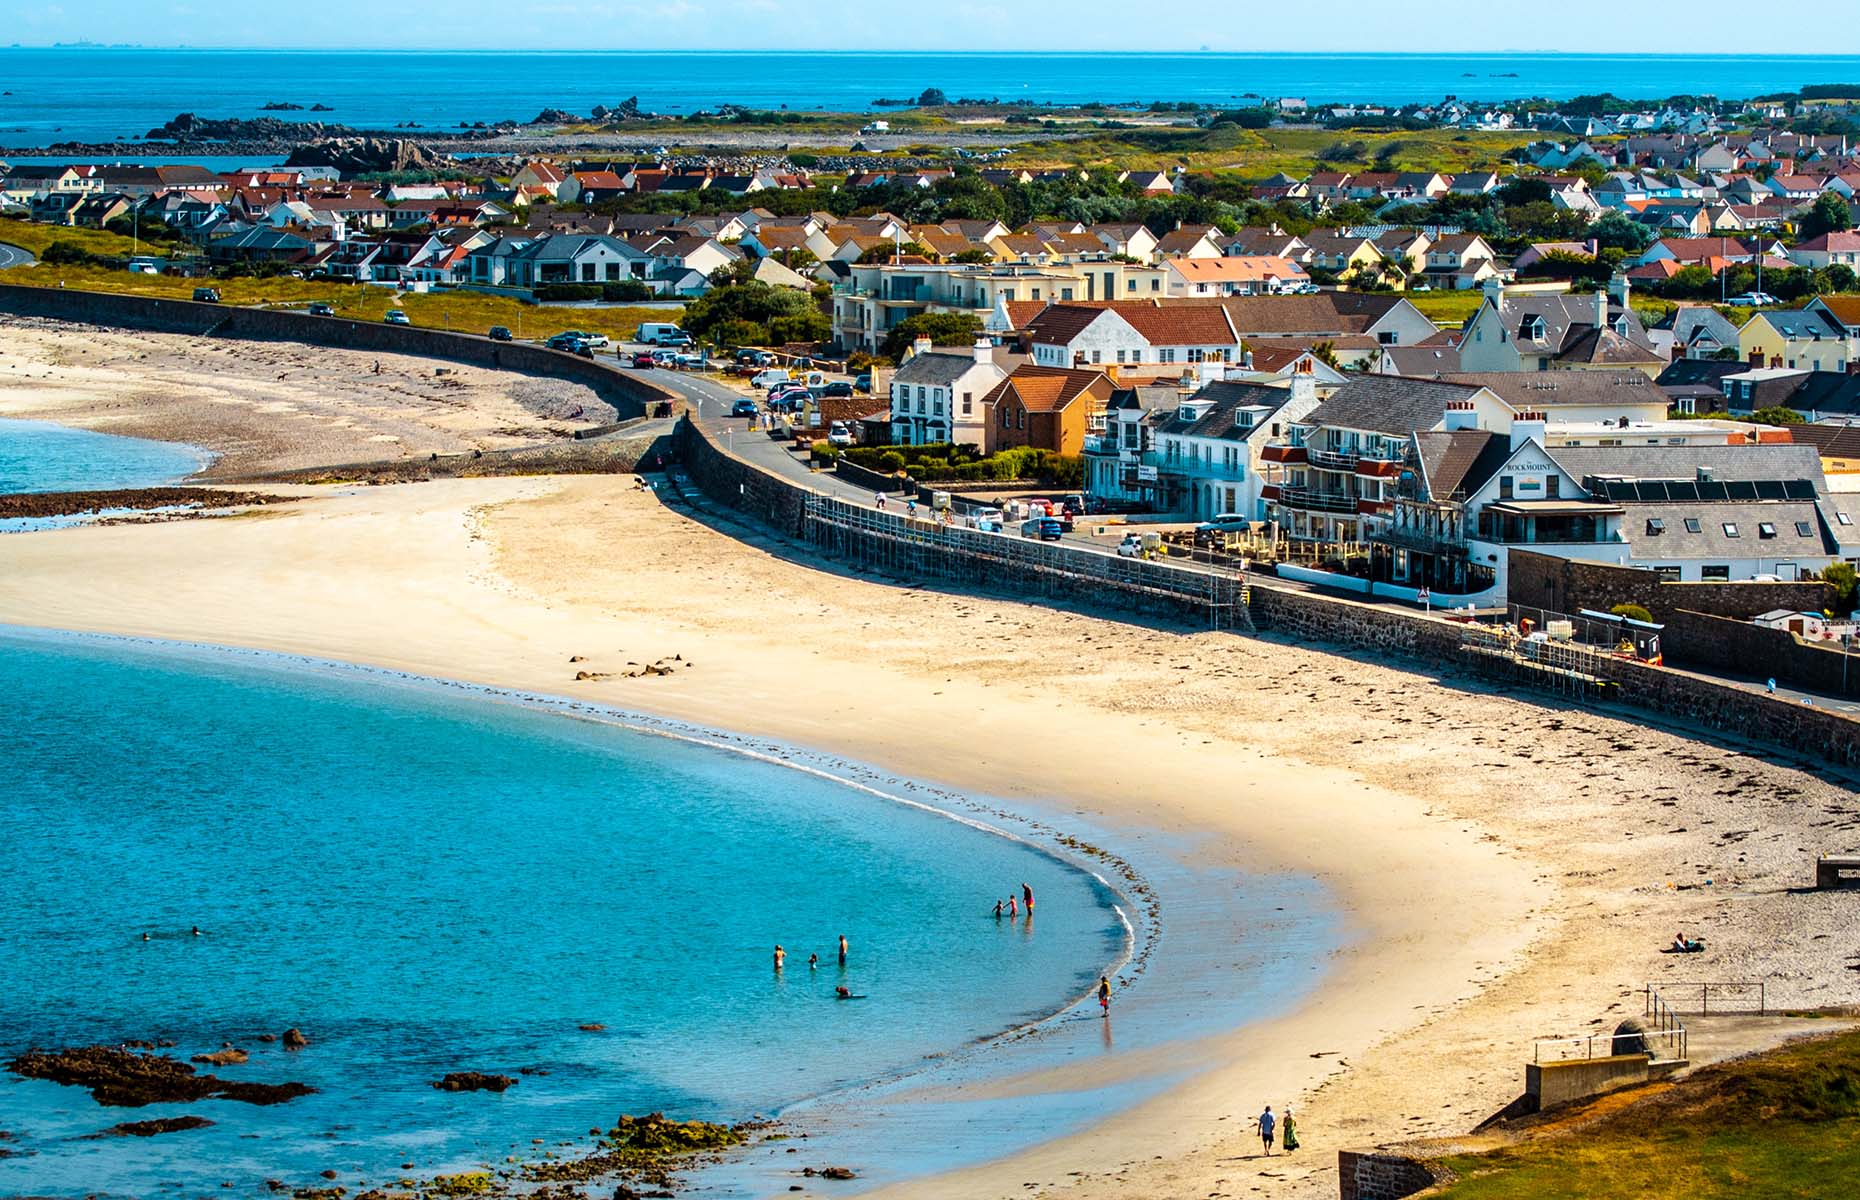 Guernsey beach (Image: MyIslands/Shutterstock)